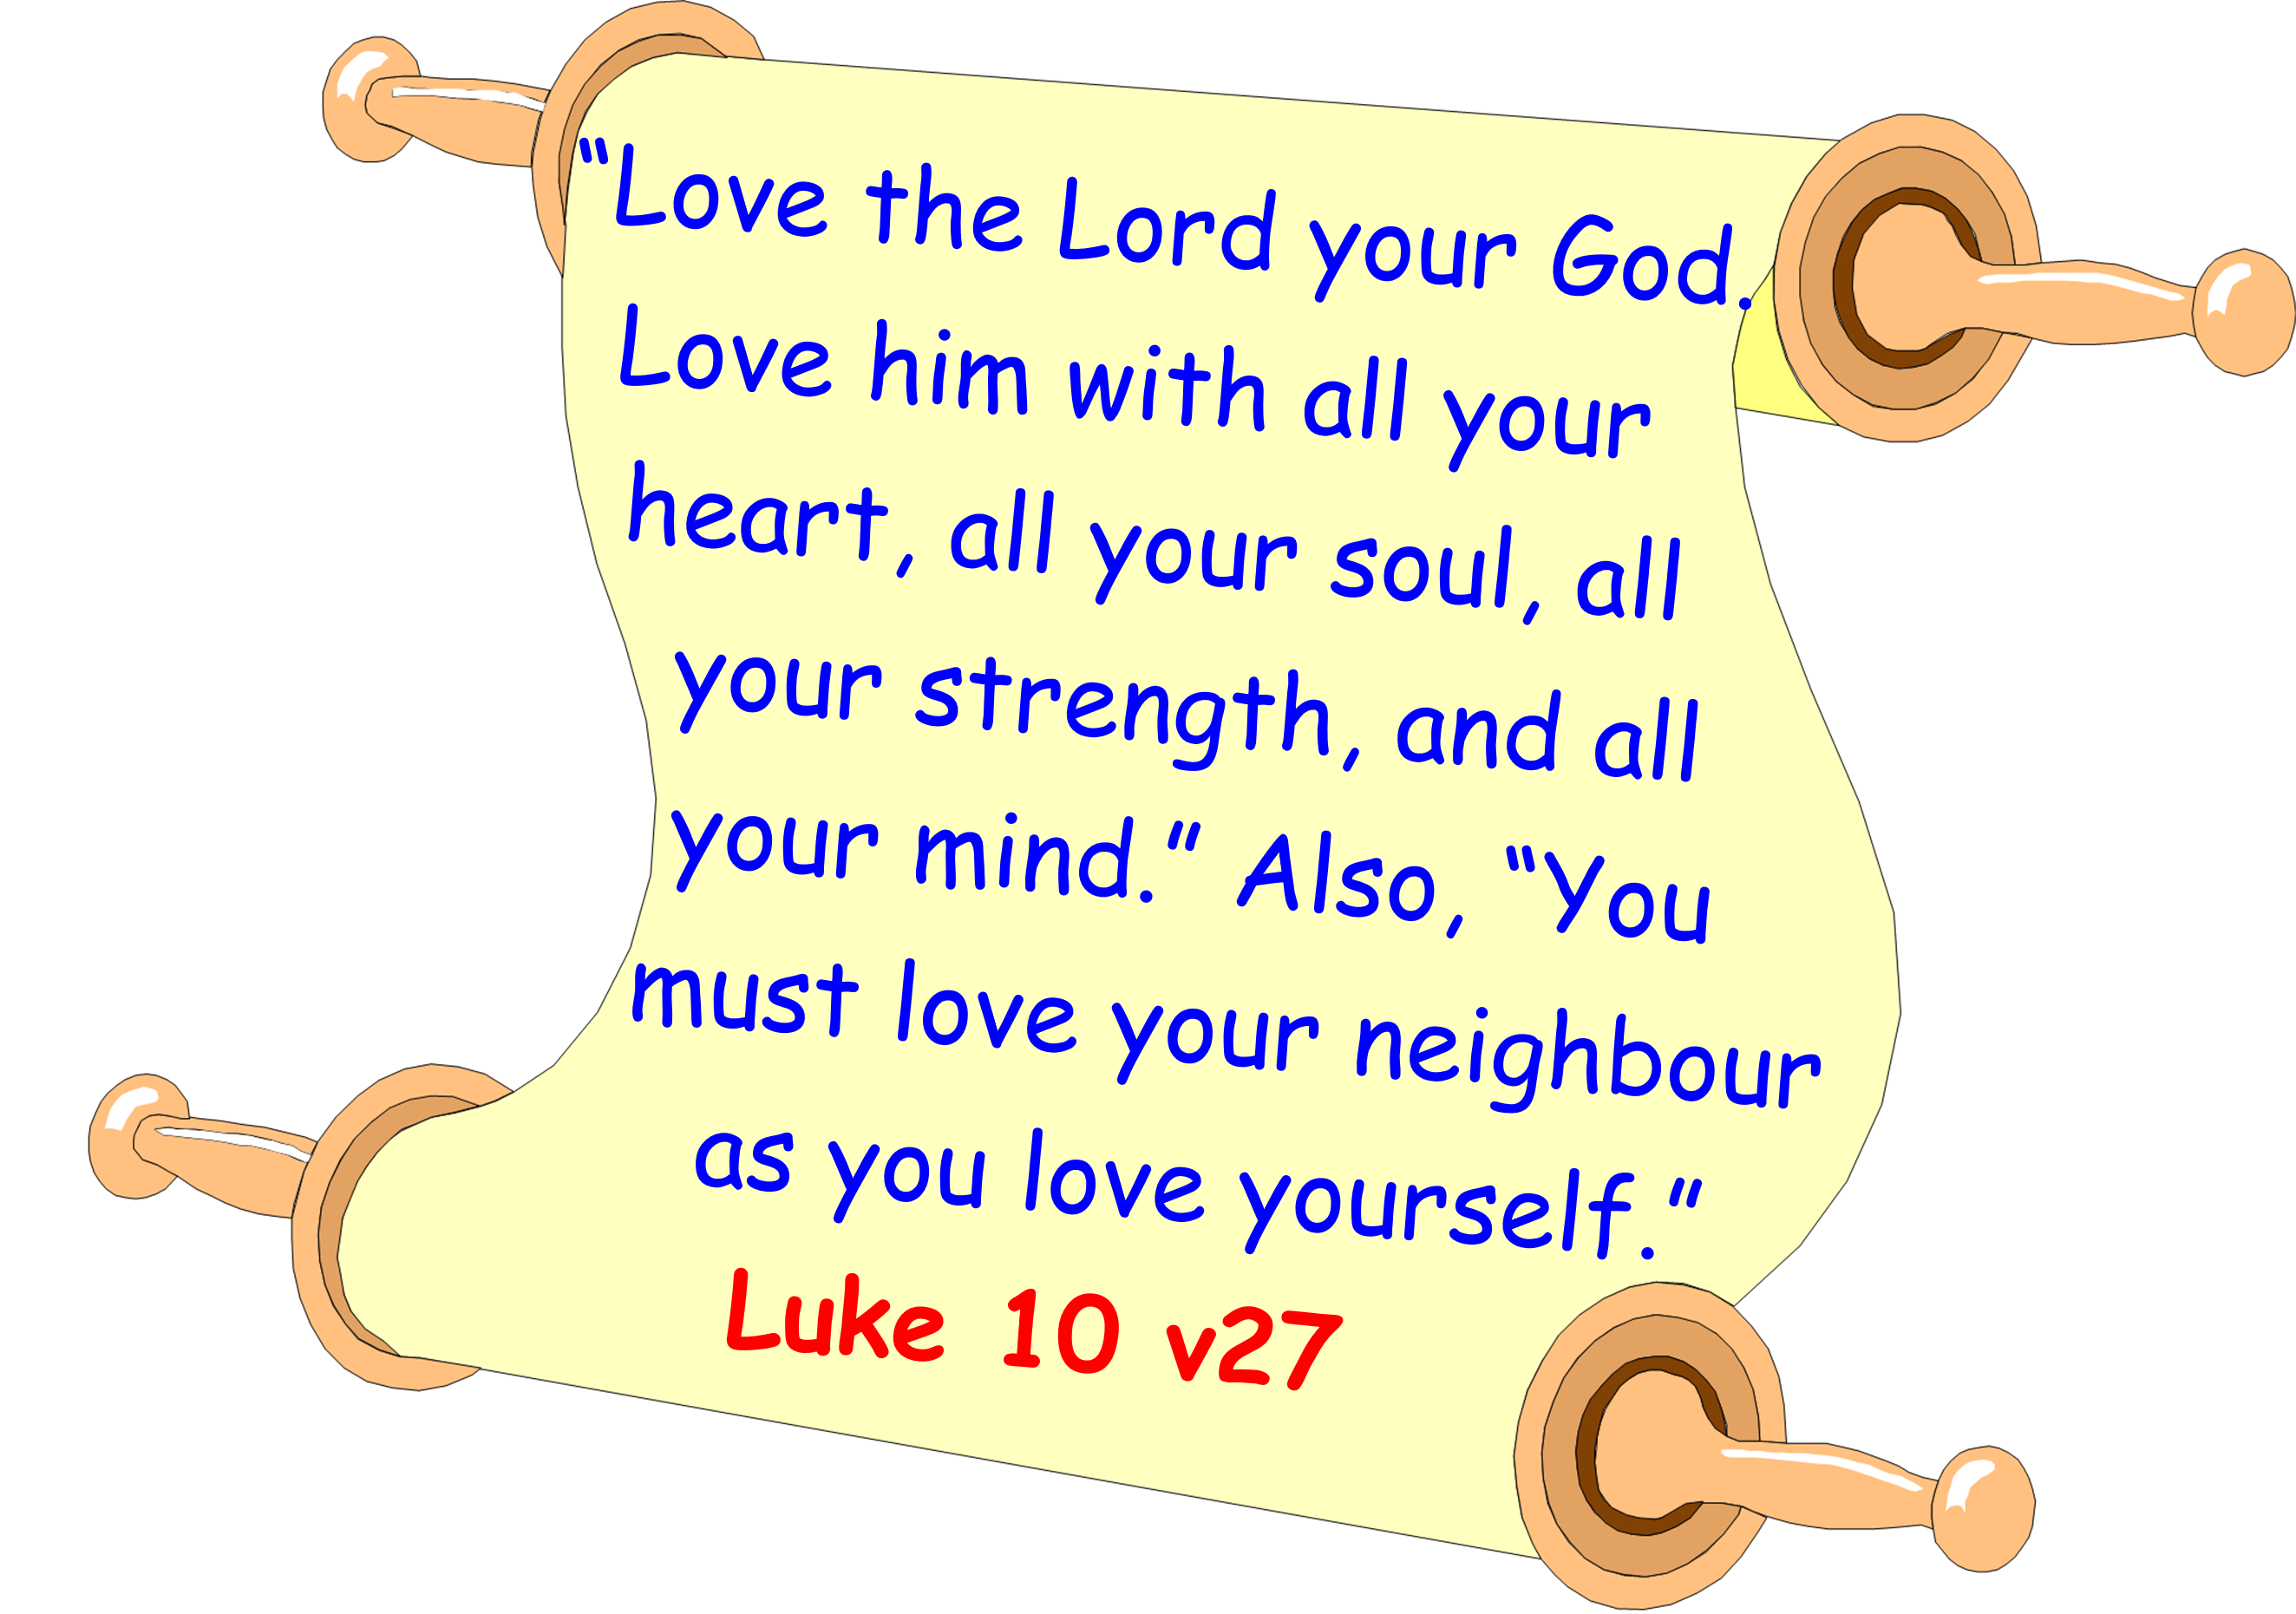 Memory verse Luke 10v27